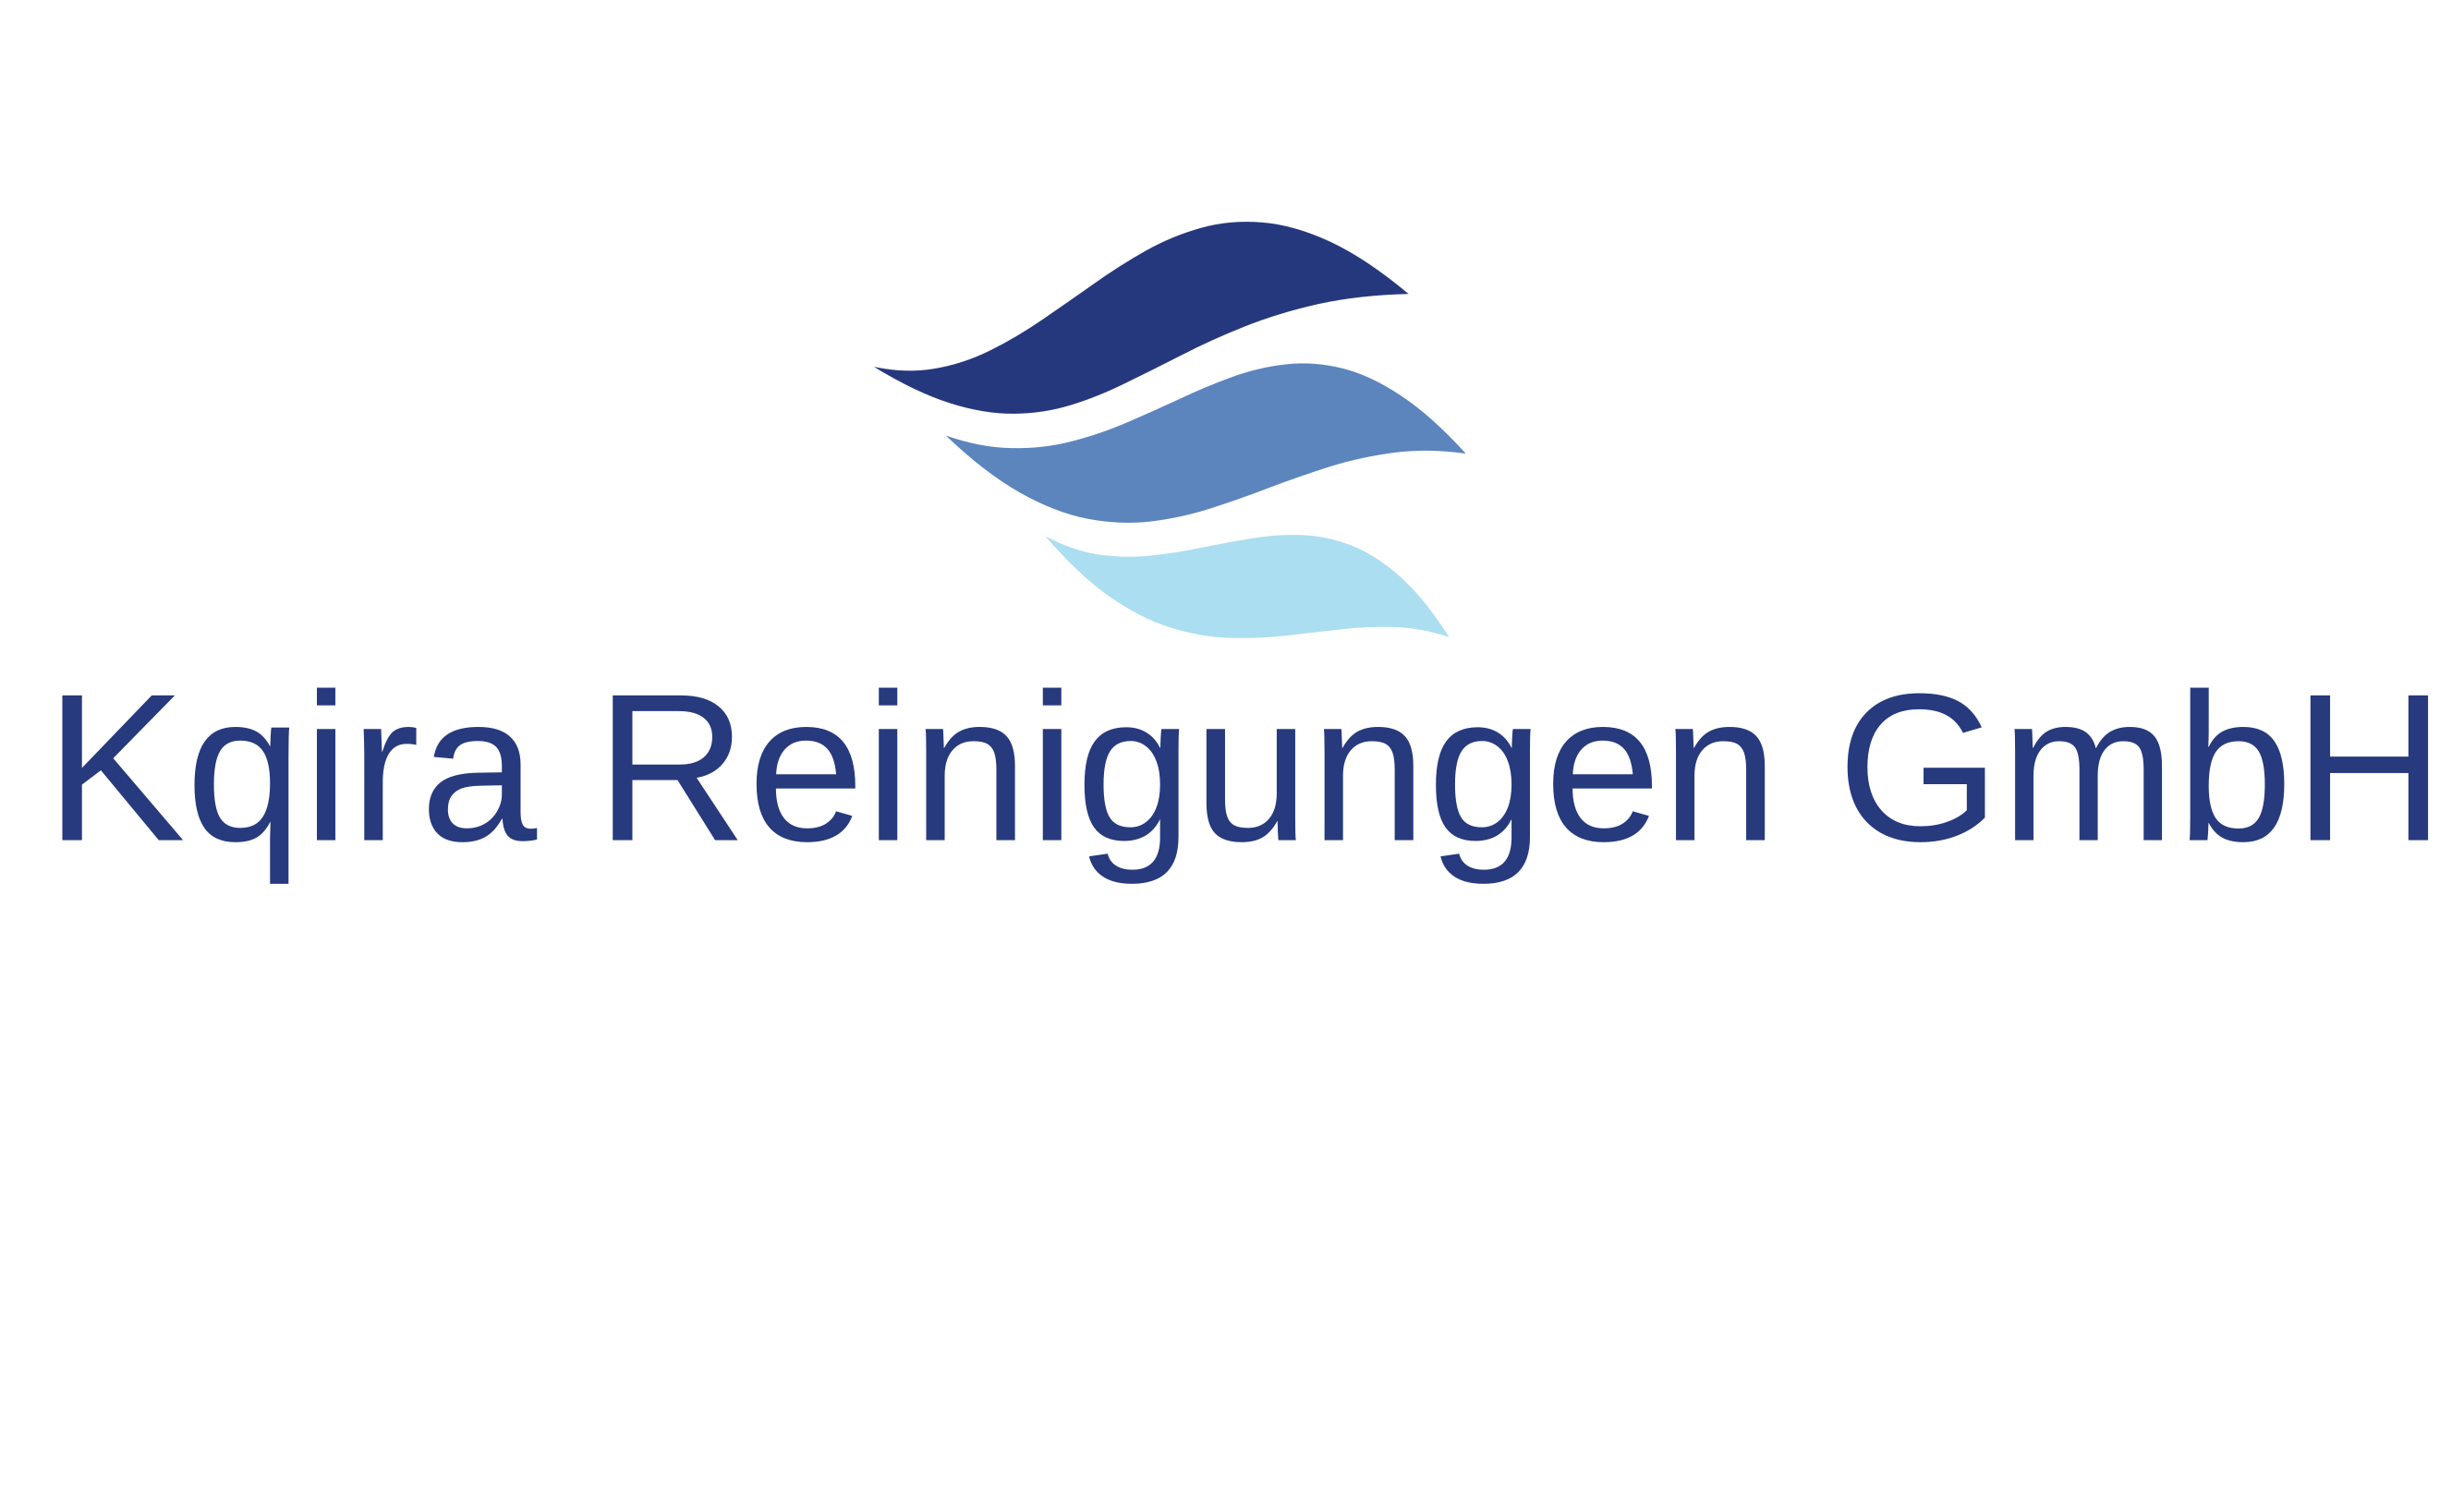 Kqira Reinigungen GmbH